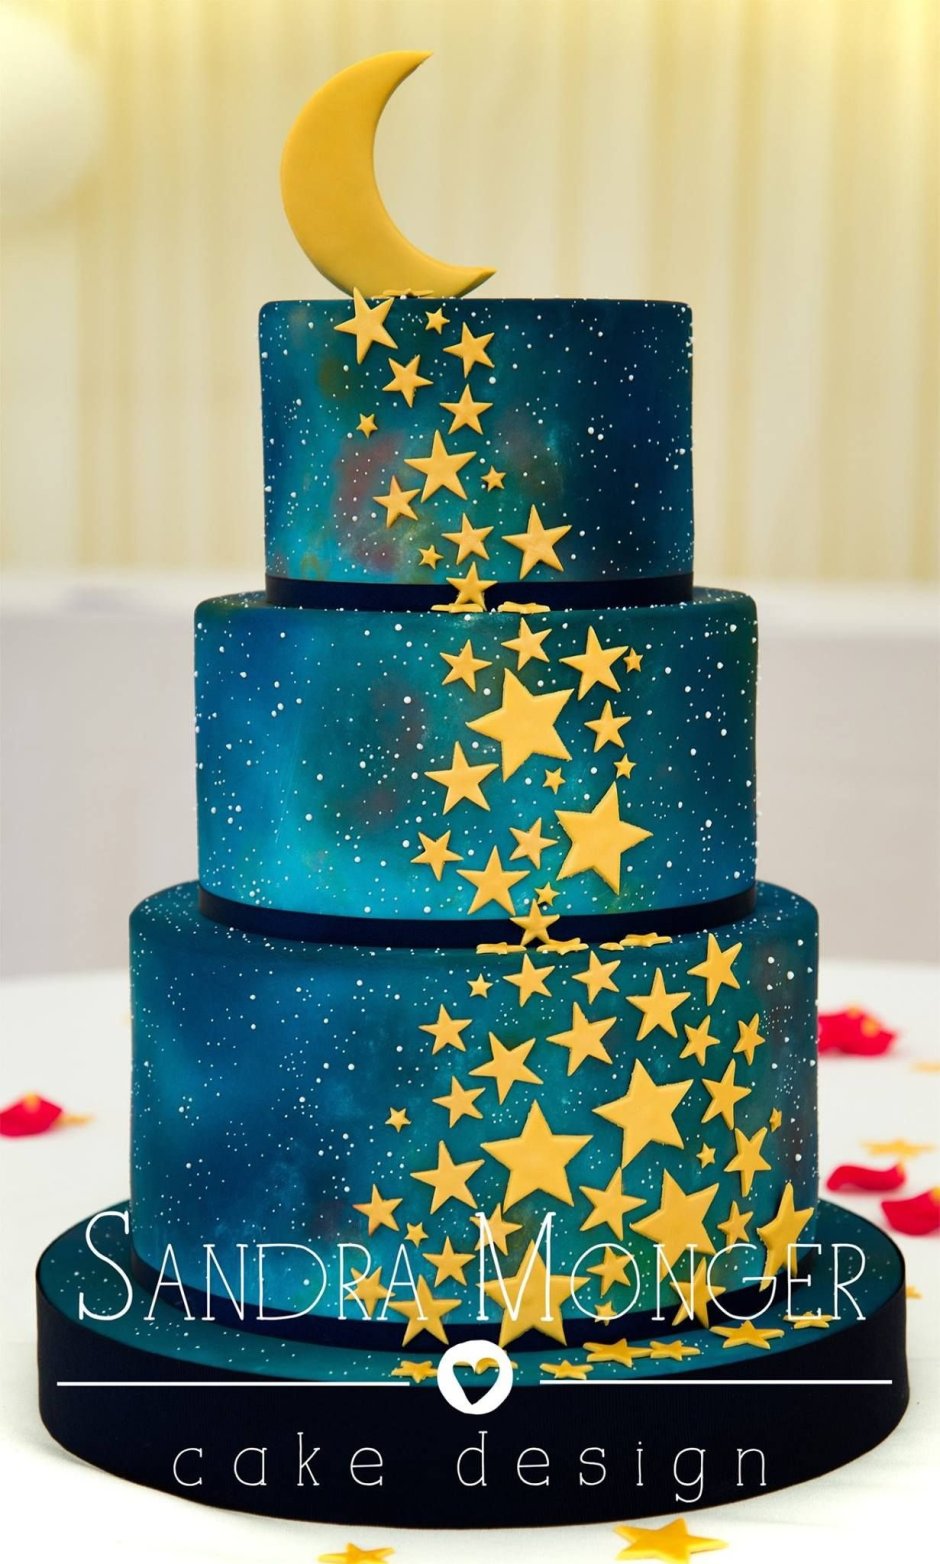 Торт со звездочками